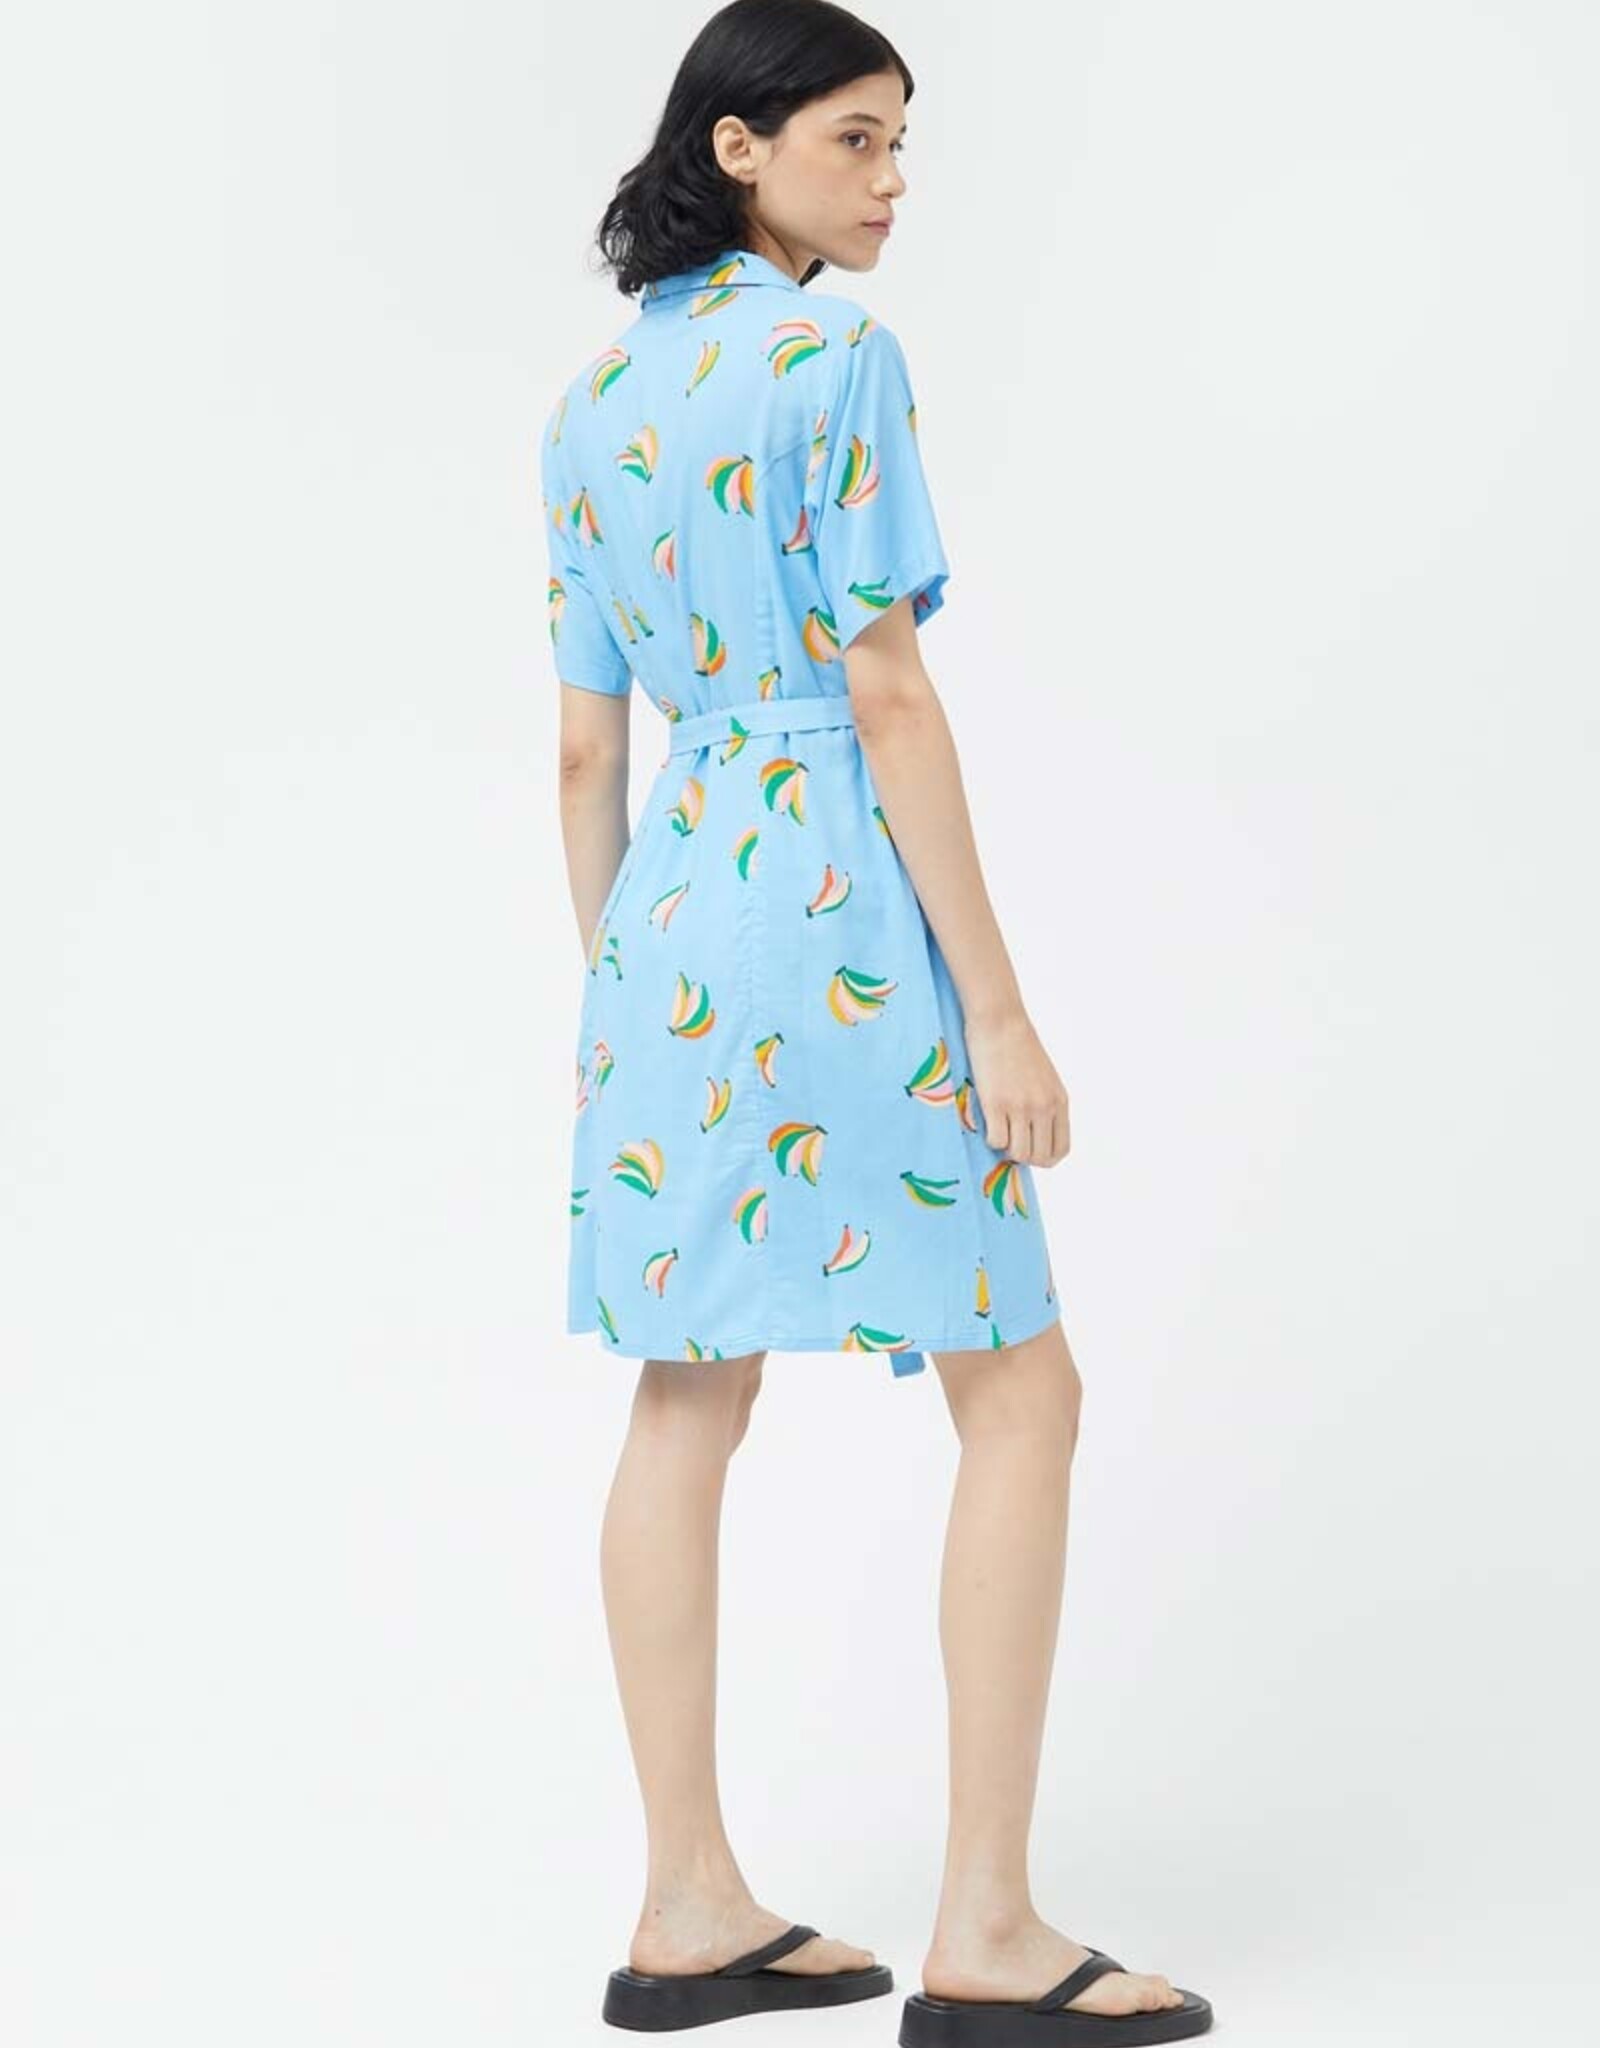 Compania Fantastica Banana Dress